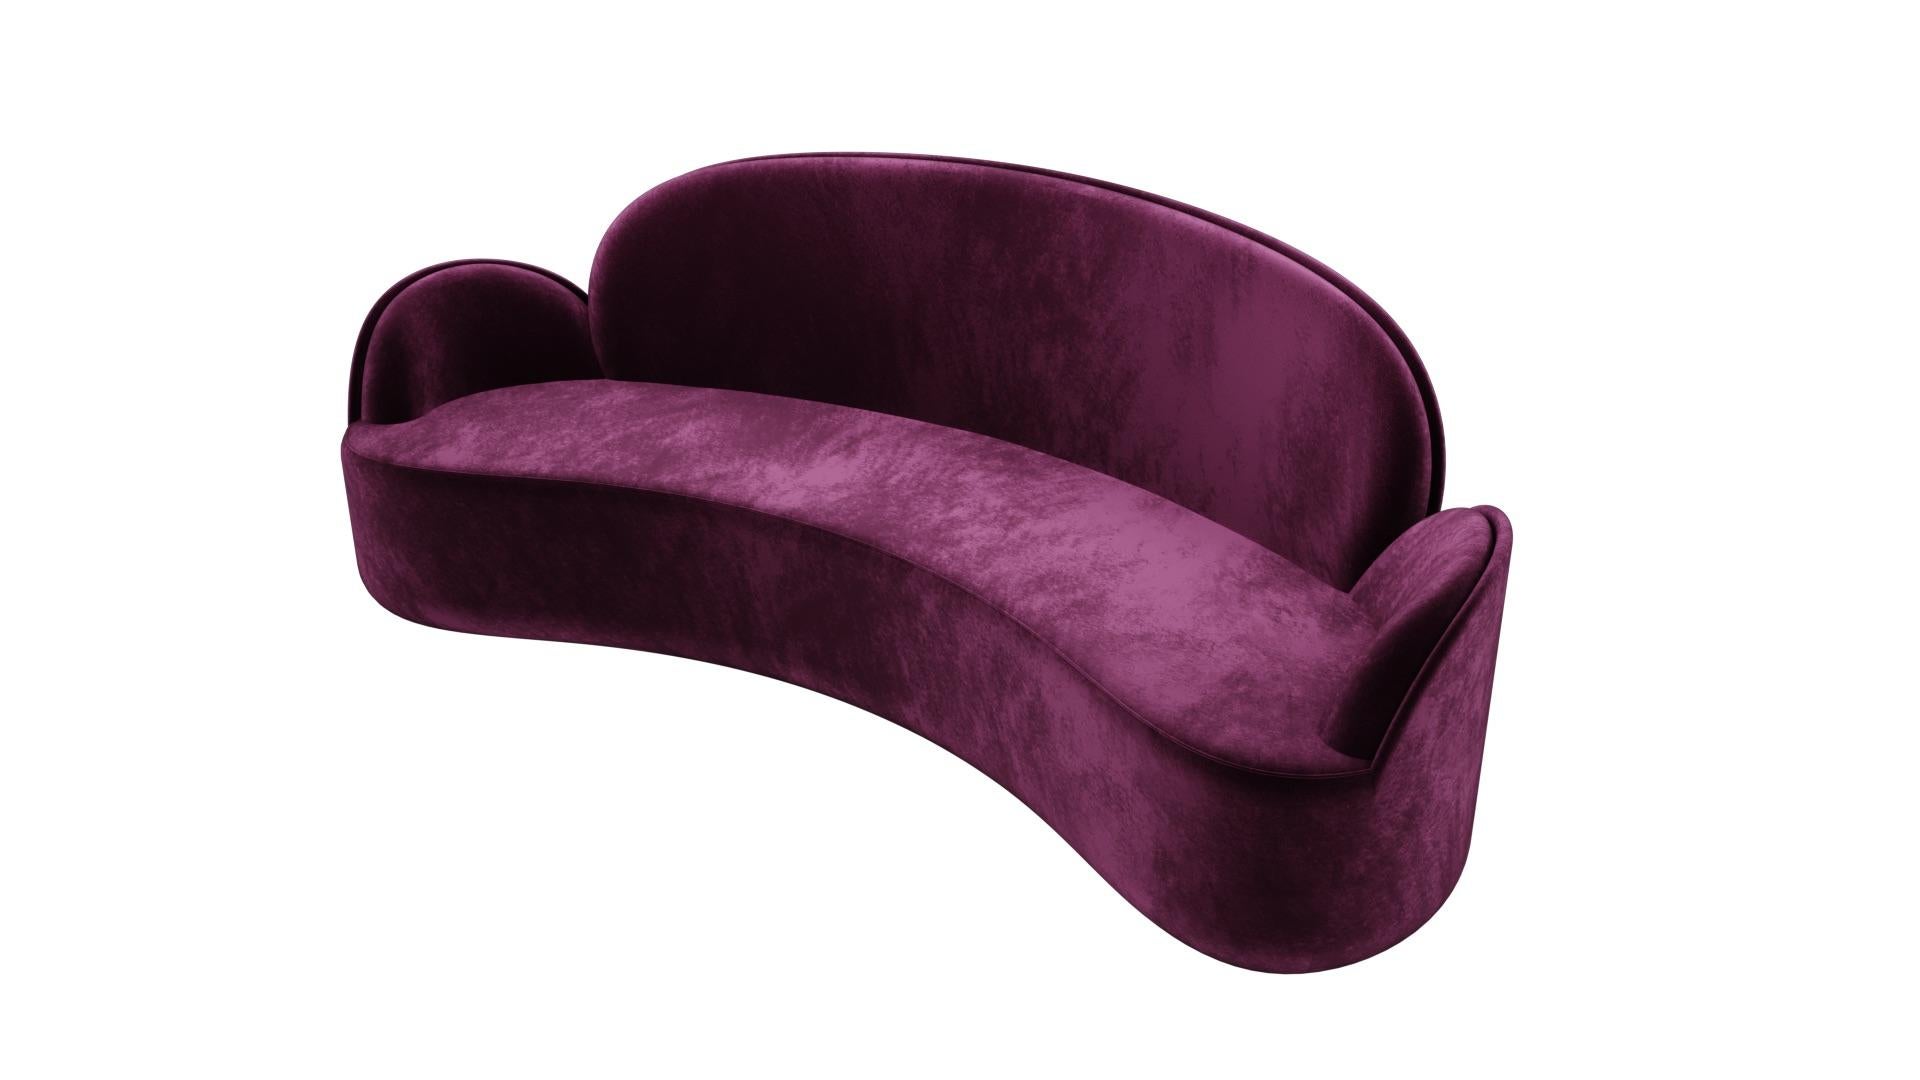 Das 3-Sitzer-Sofa Strings mit plüschigem lila Samt von Nika Zupanc ist ein elegantes und ergonomisch perfektes Dreisitzer-Sofa mit herrlichen Rundungen.

Das Wort Saiten weckt in uns die Vorstellung von Leichtigkeit. Ob es sich um die Saiten eines